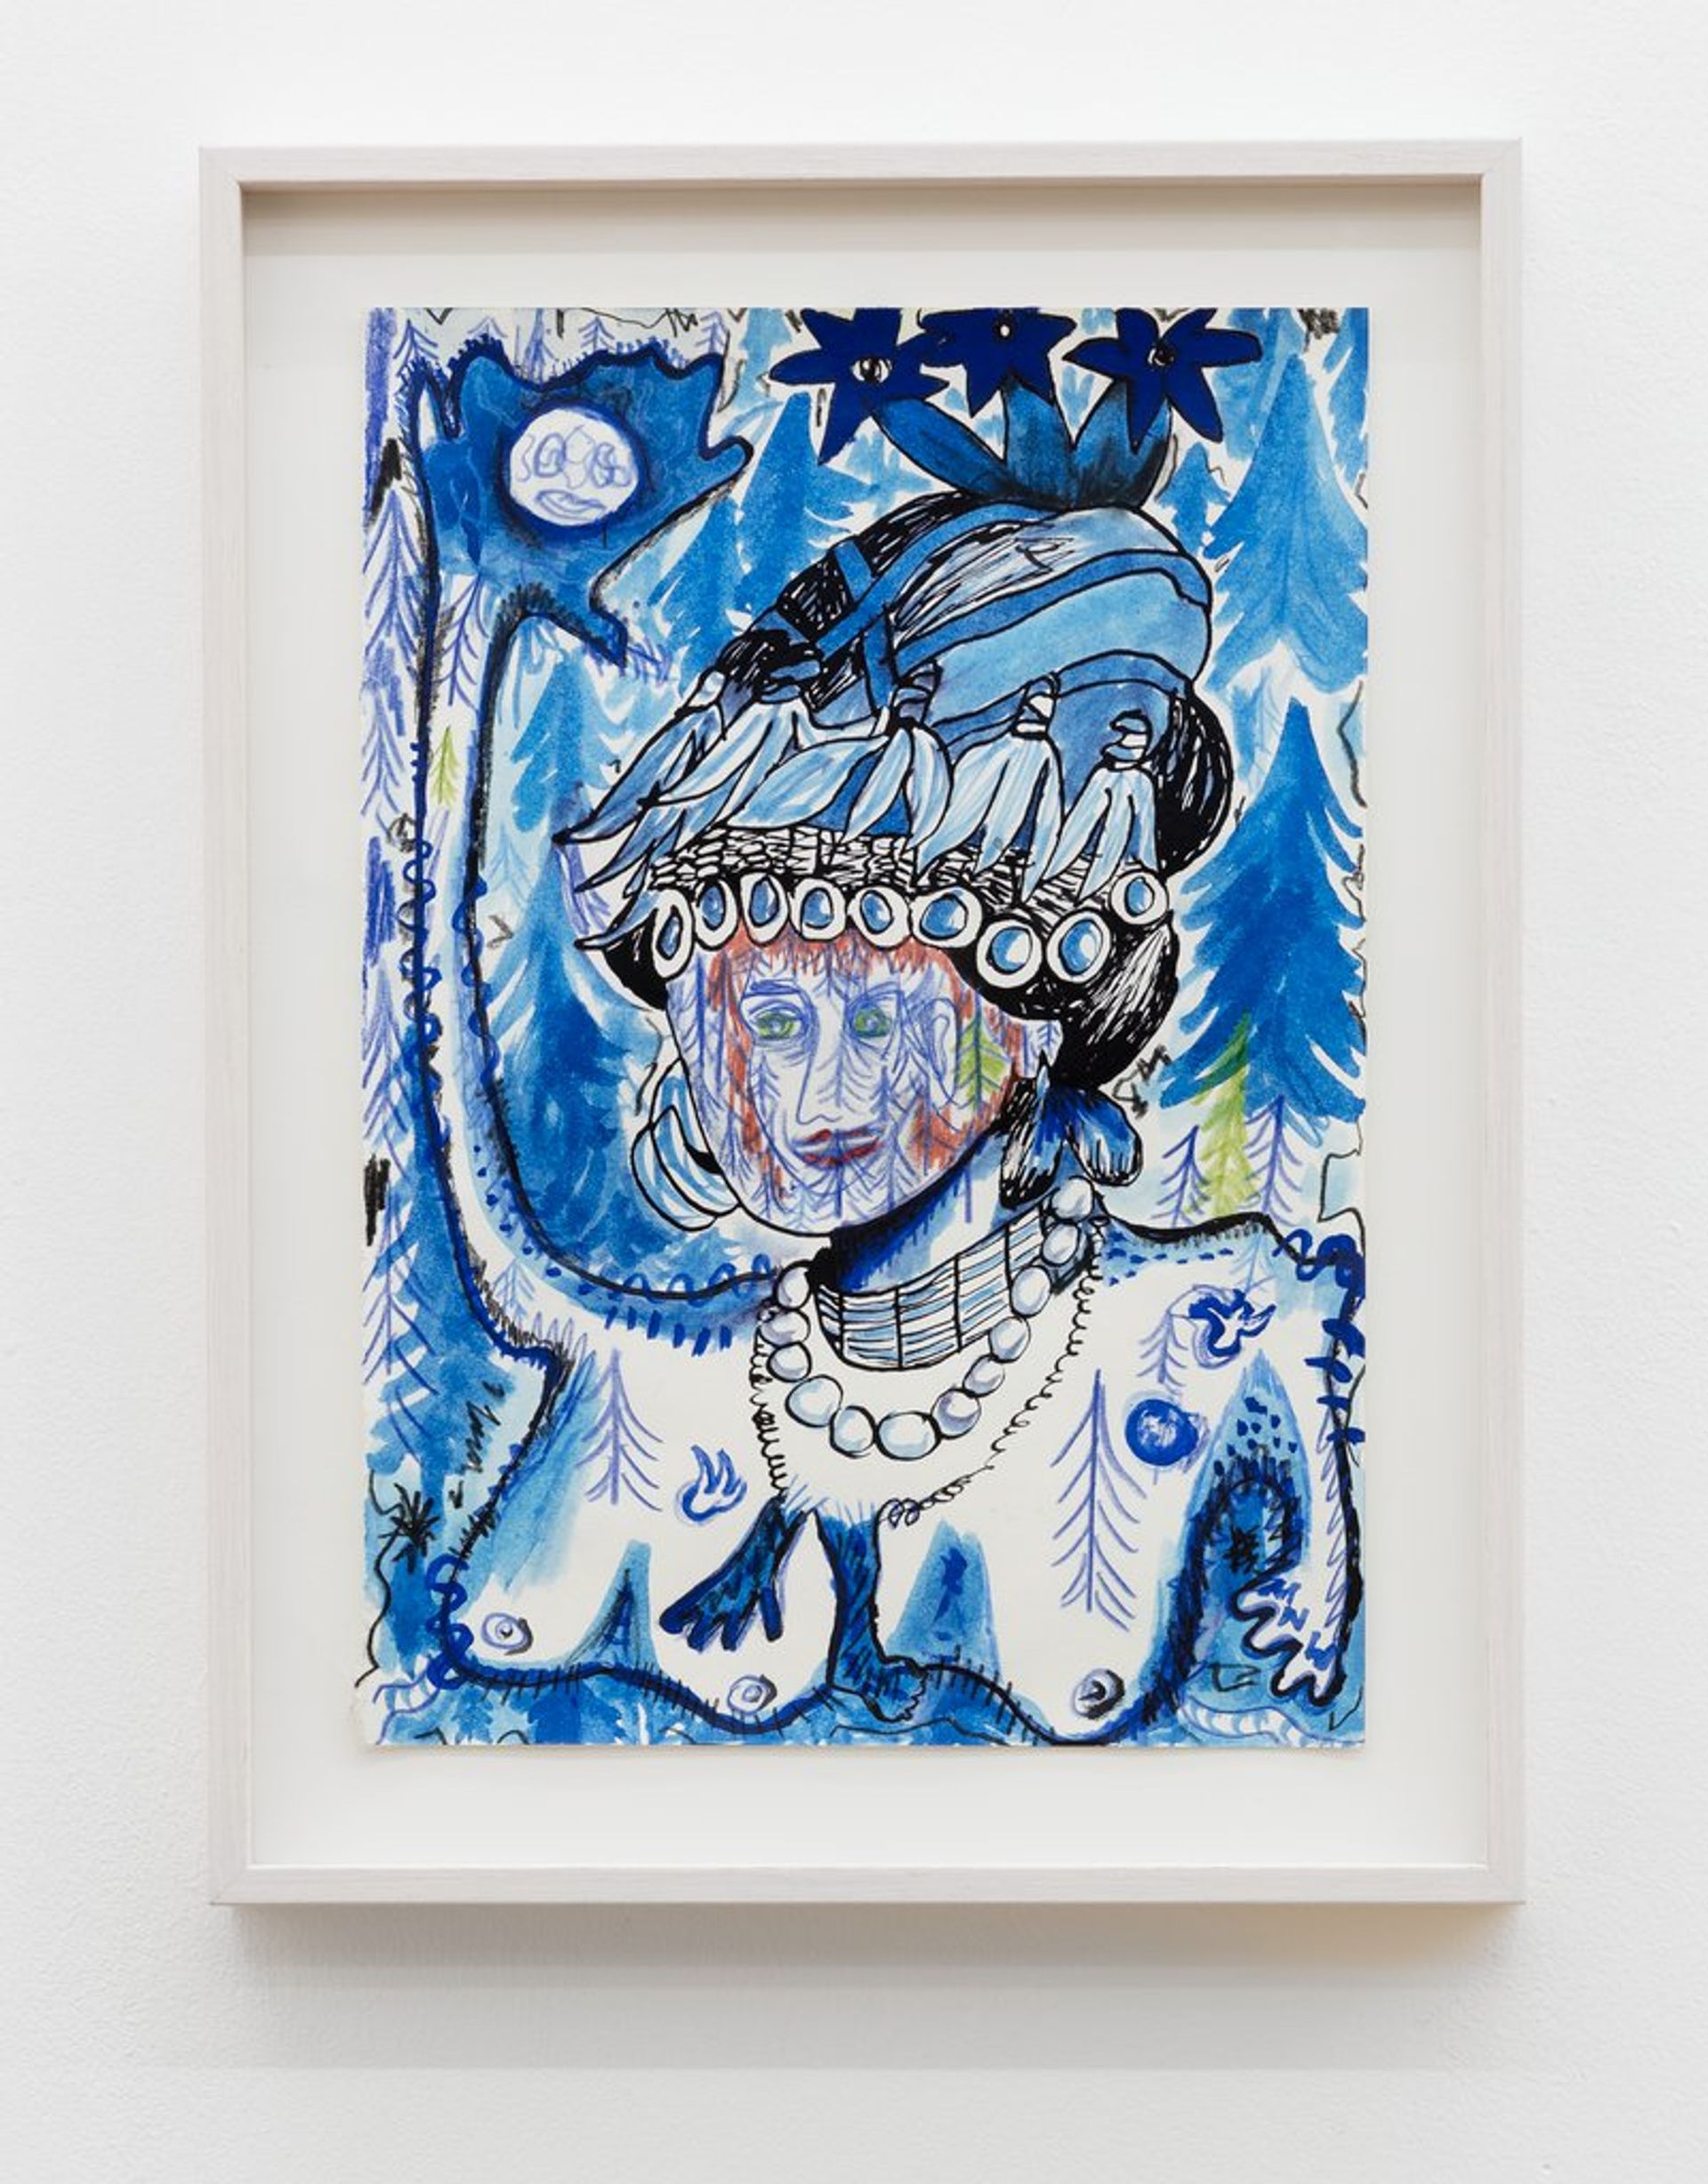 Anna McCarthy, Königin der Nacht, 2018, crayon, gouache, Indian ink on paper, 29.5 x 21.7 cm